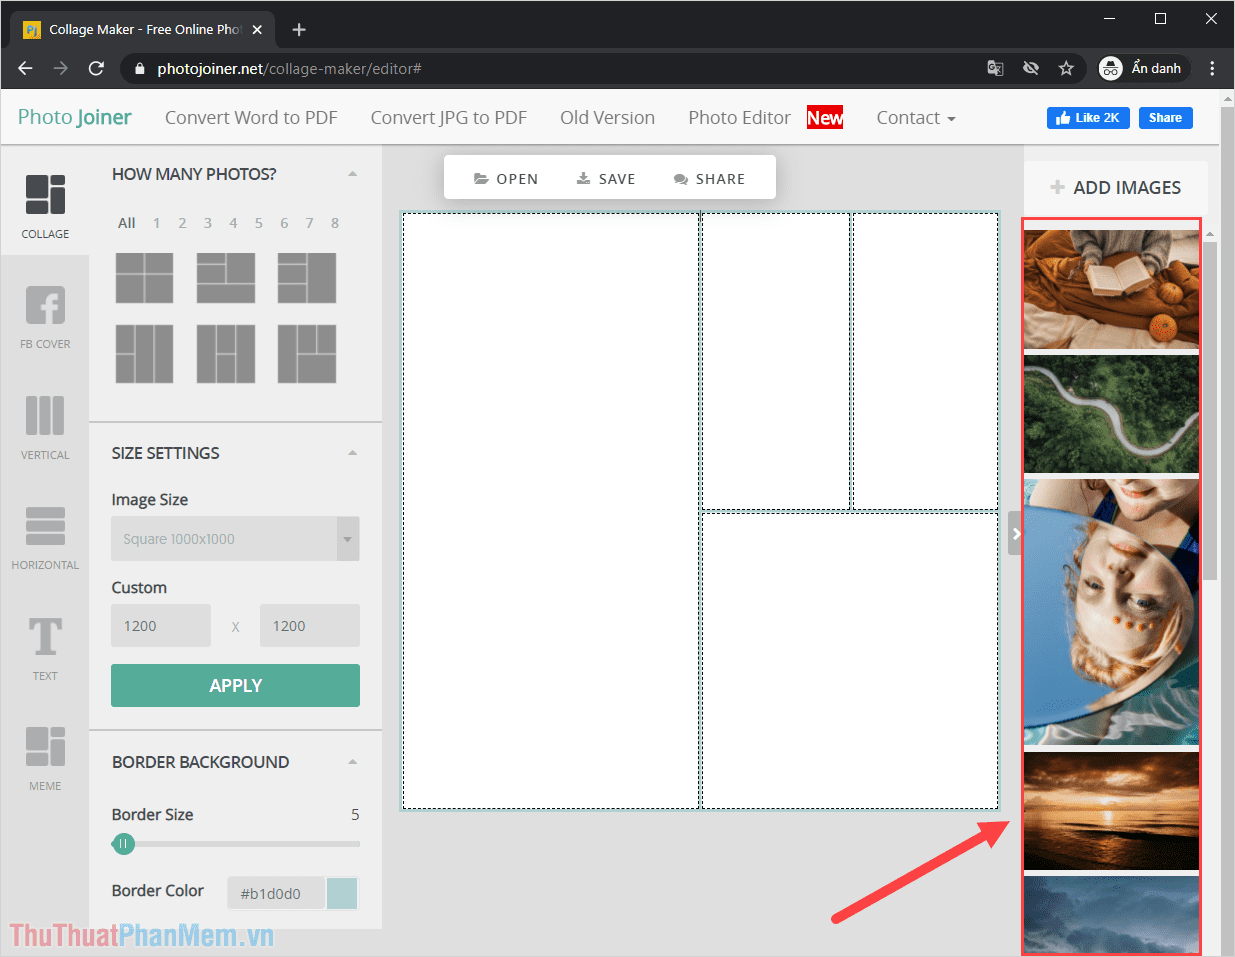 Hình ảnh sau khi được tải lên từ máy tính sẽ được hiển thị ở cột bên tay phải của giao diện làm việc